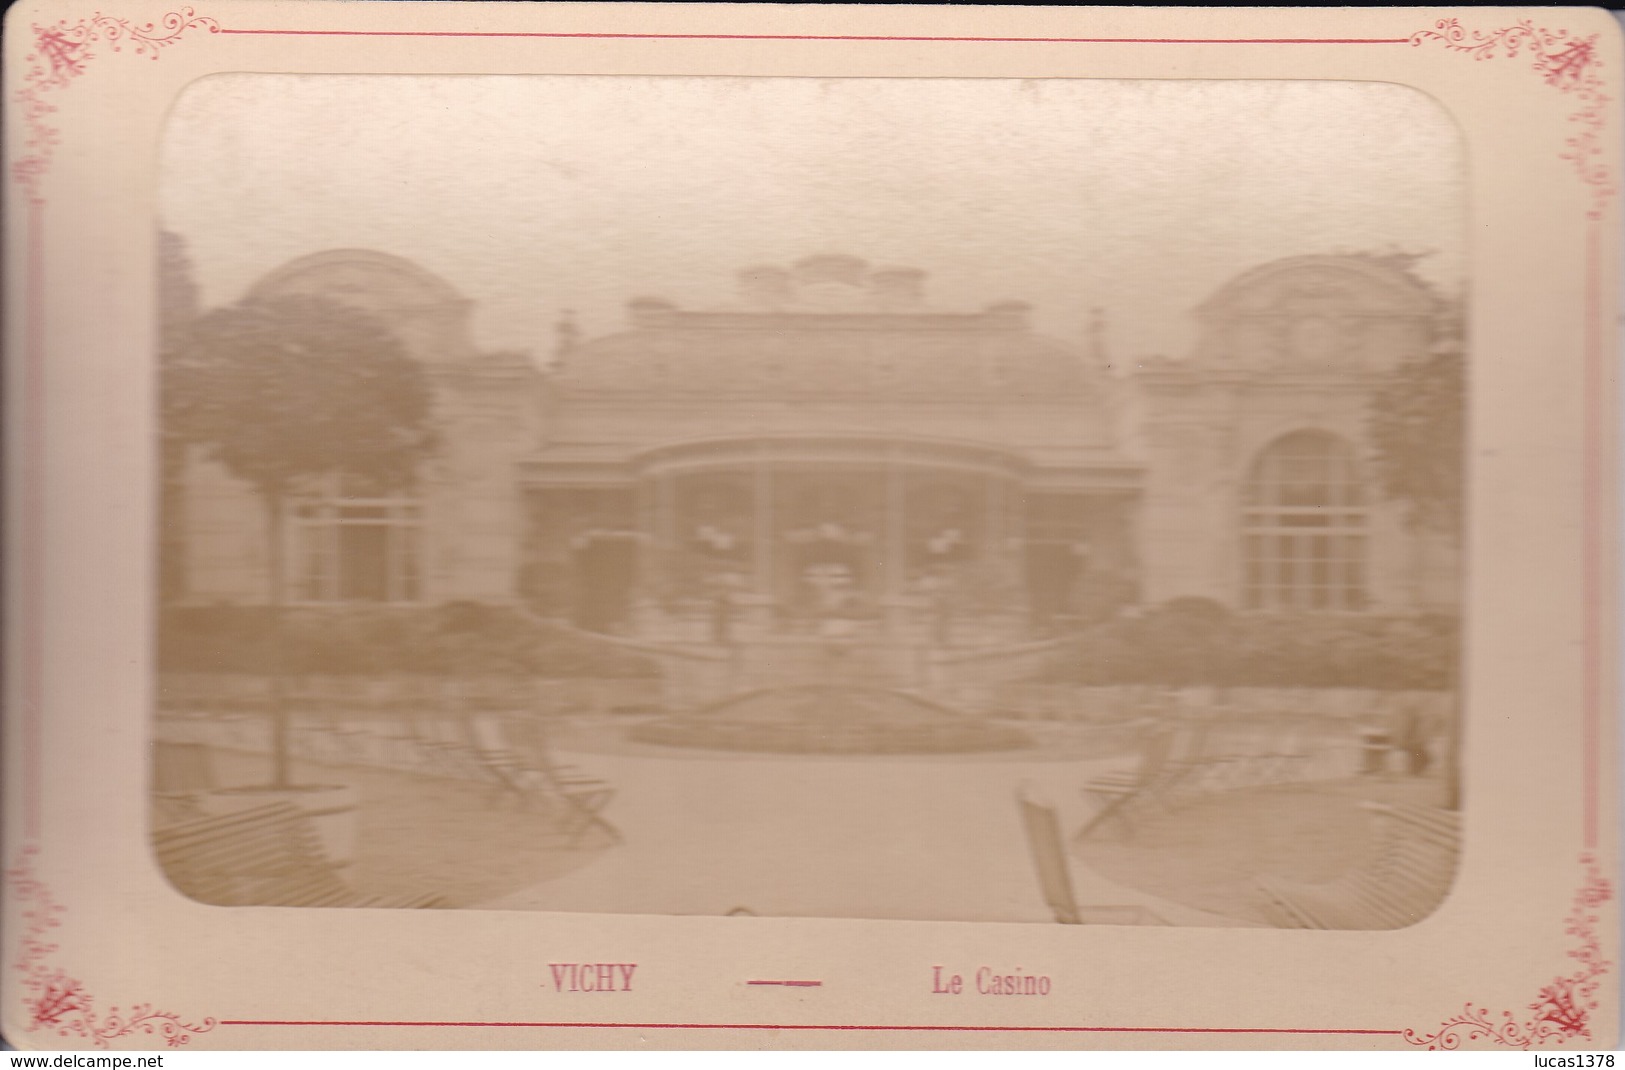 03 / VICHY / LE CASINO /   PHOTO COLLEE SUR CARTON - FIN XIXe DEBUT XXe Siècle / 16 X 10 CM - Anciennes (Av. 1900)